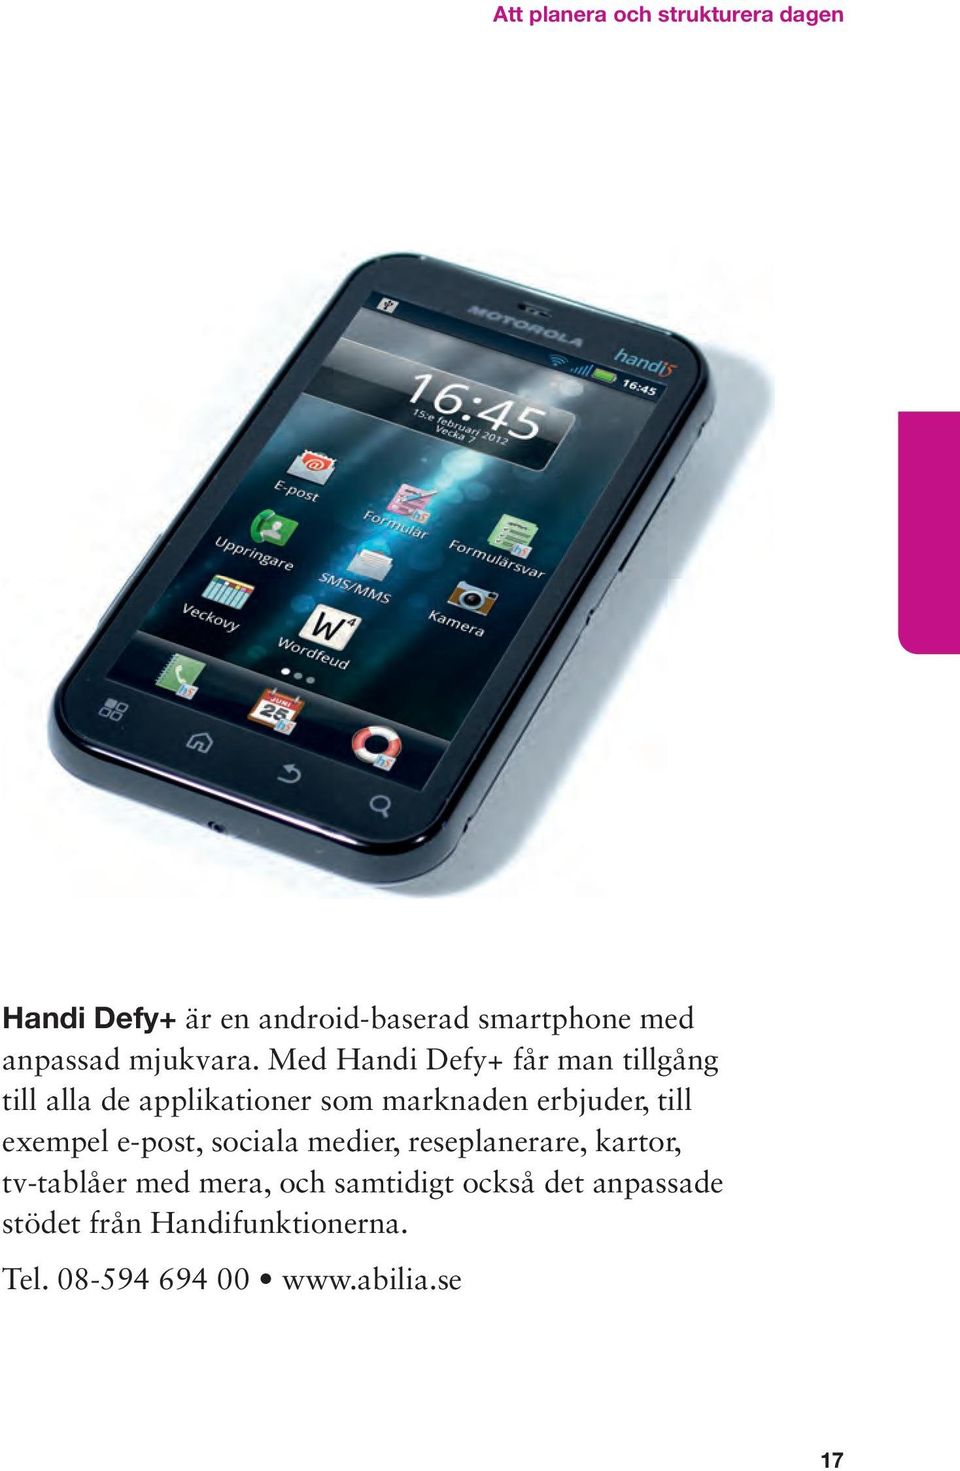 Med Handi Defy+ får man tillgång till alla de applikationer som marknaden erbjuder, till